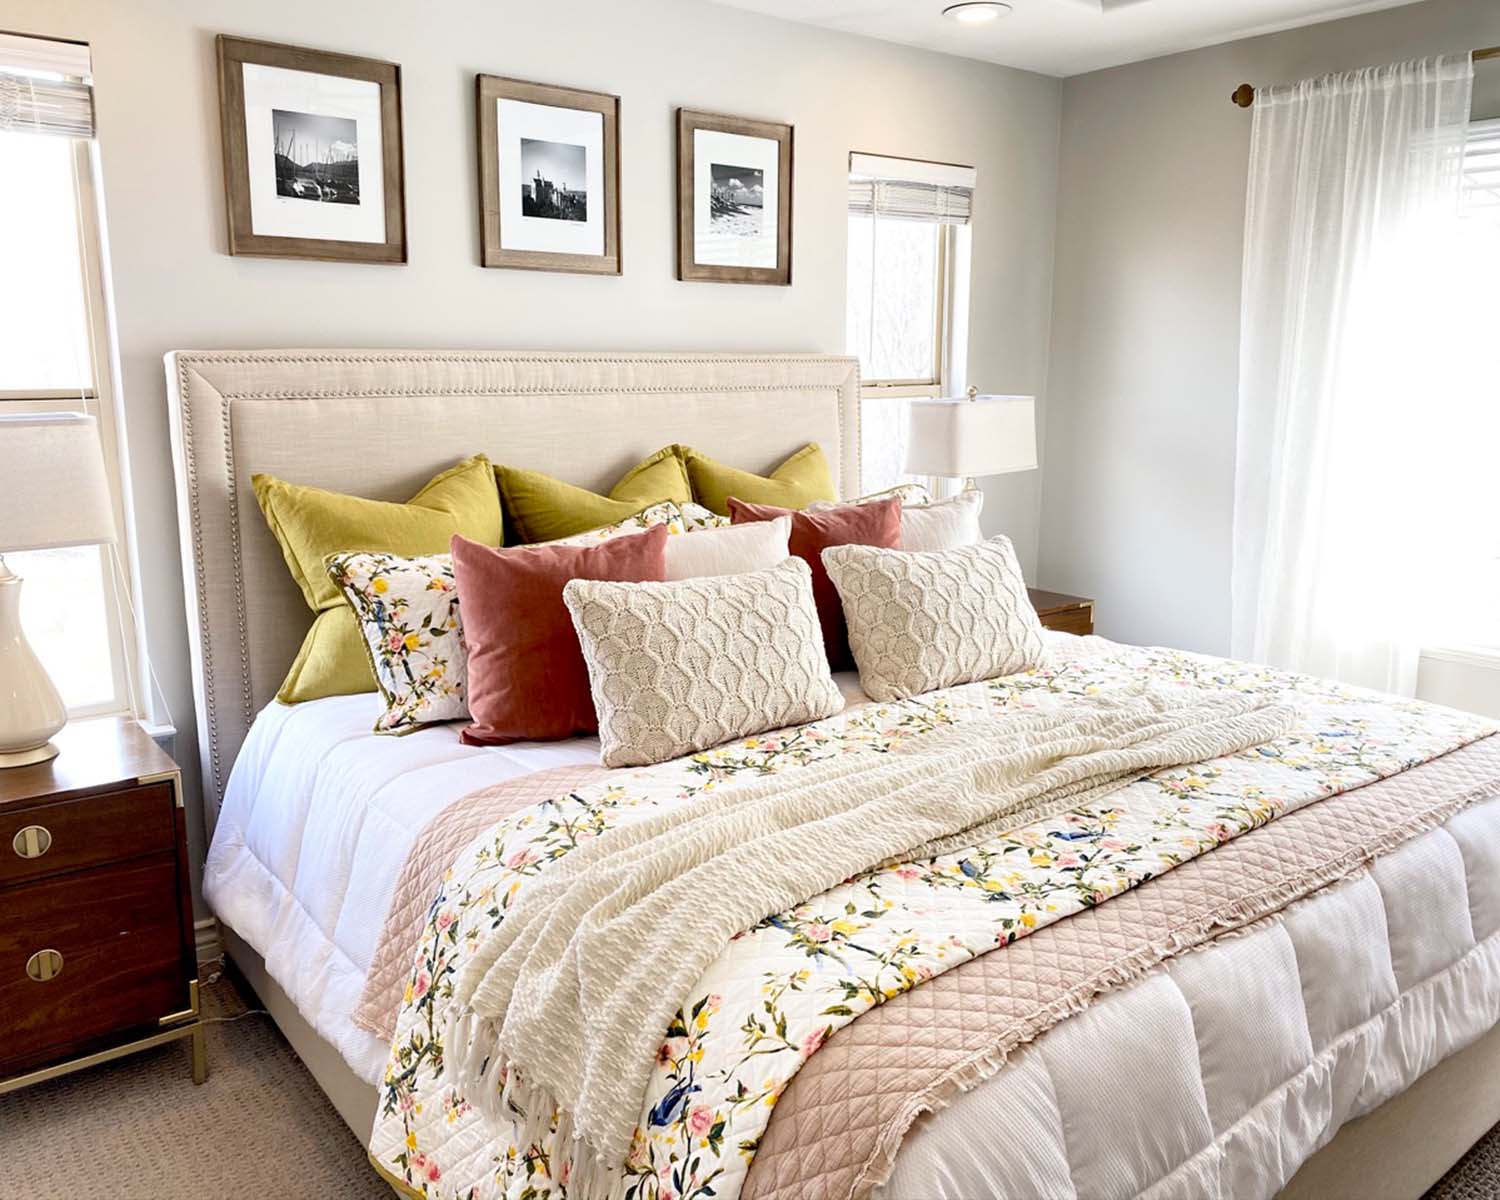 Utah Home Staging Master Bedroom After Image